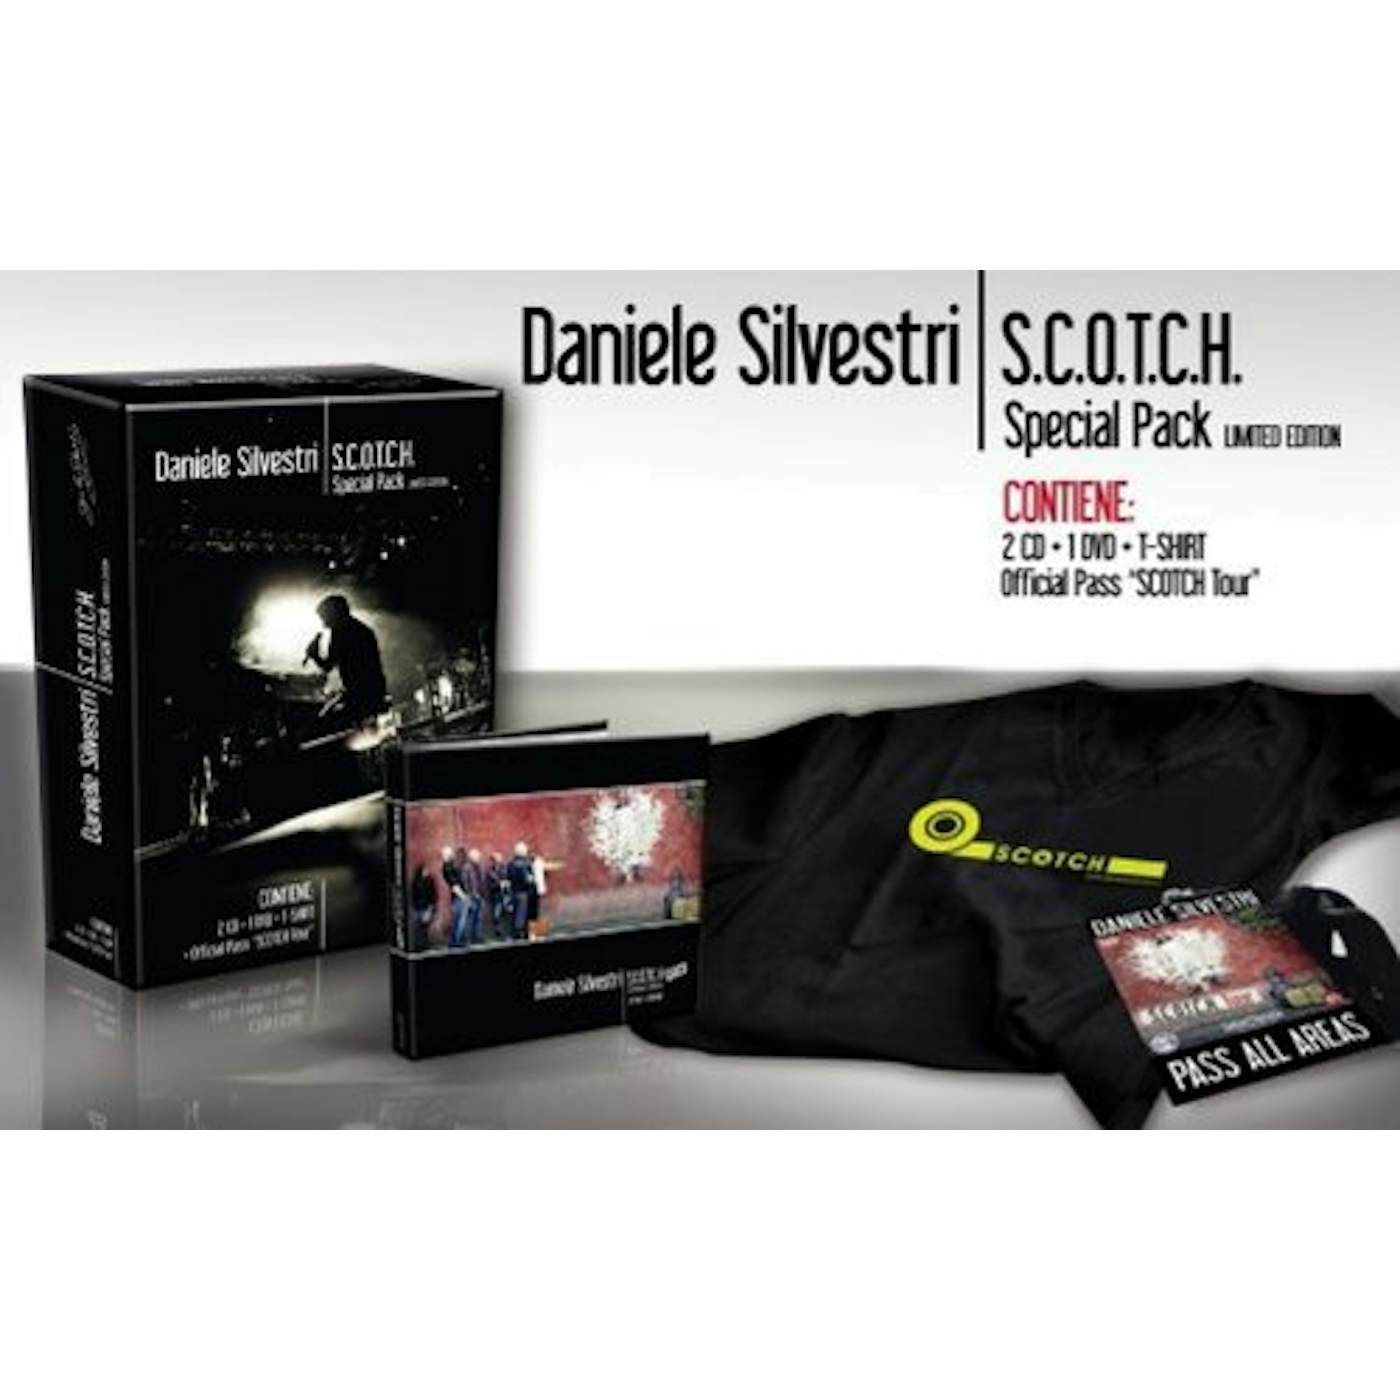 Daniele Silvestri S.C.O.T.C.H. SPECIAL PACK CD